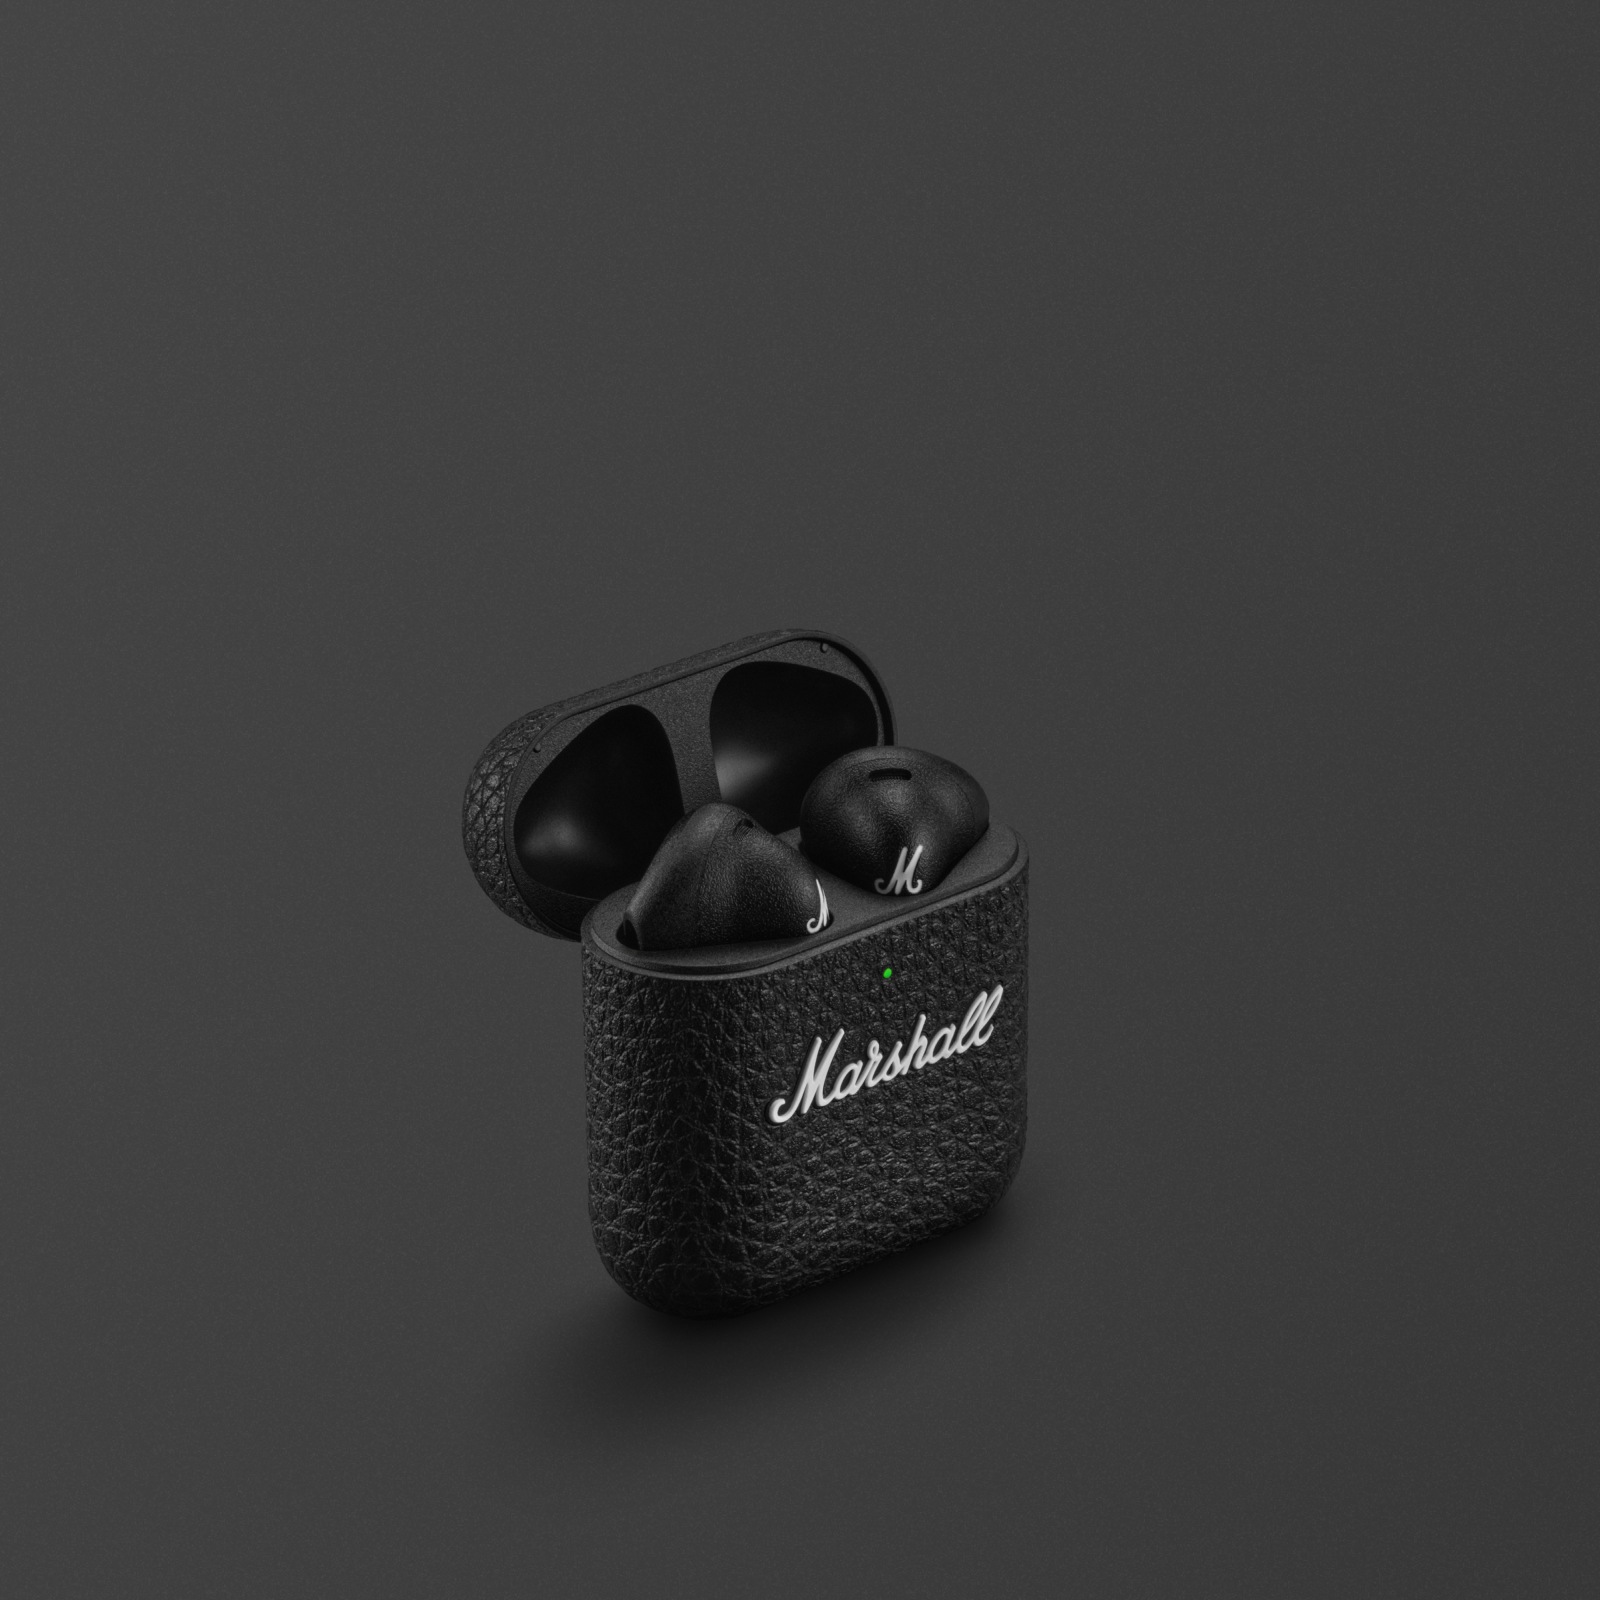 Marshall Minor IV Black wireless earbuds vor einem grauen Hintergrund.